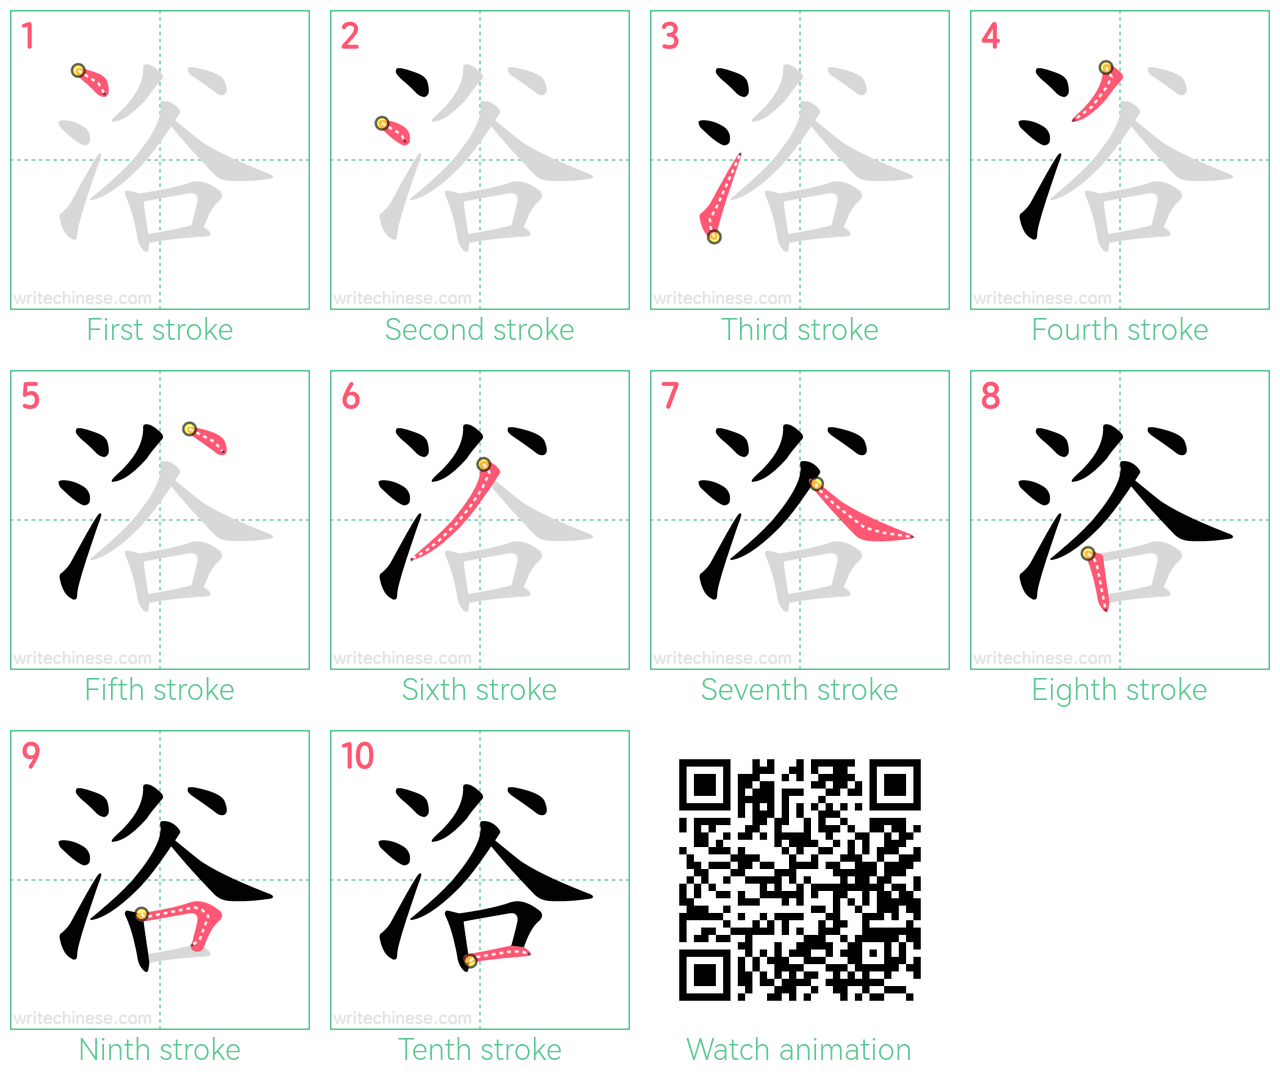 浴 step-by-step stroke order diagrams